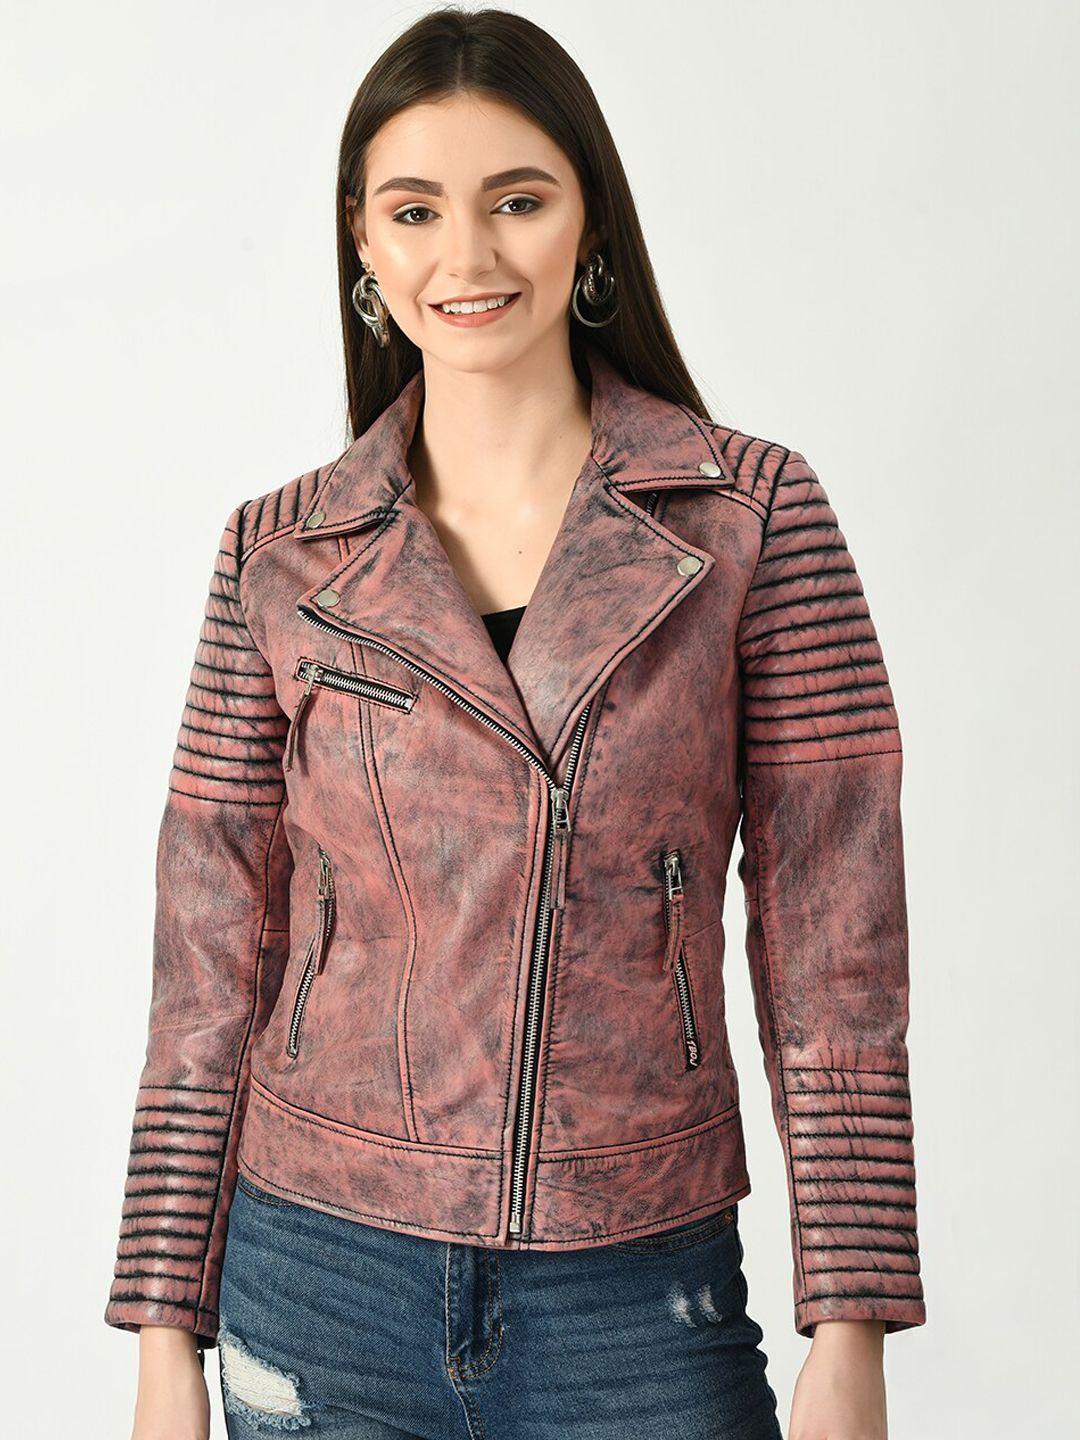 tboj women pink leather lightweight biker jacket